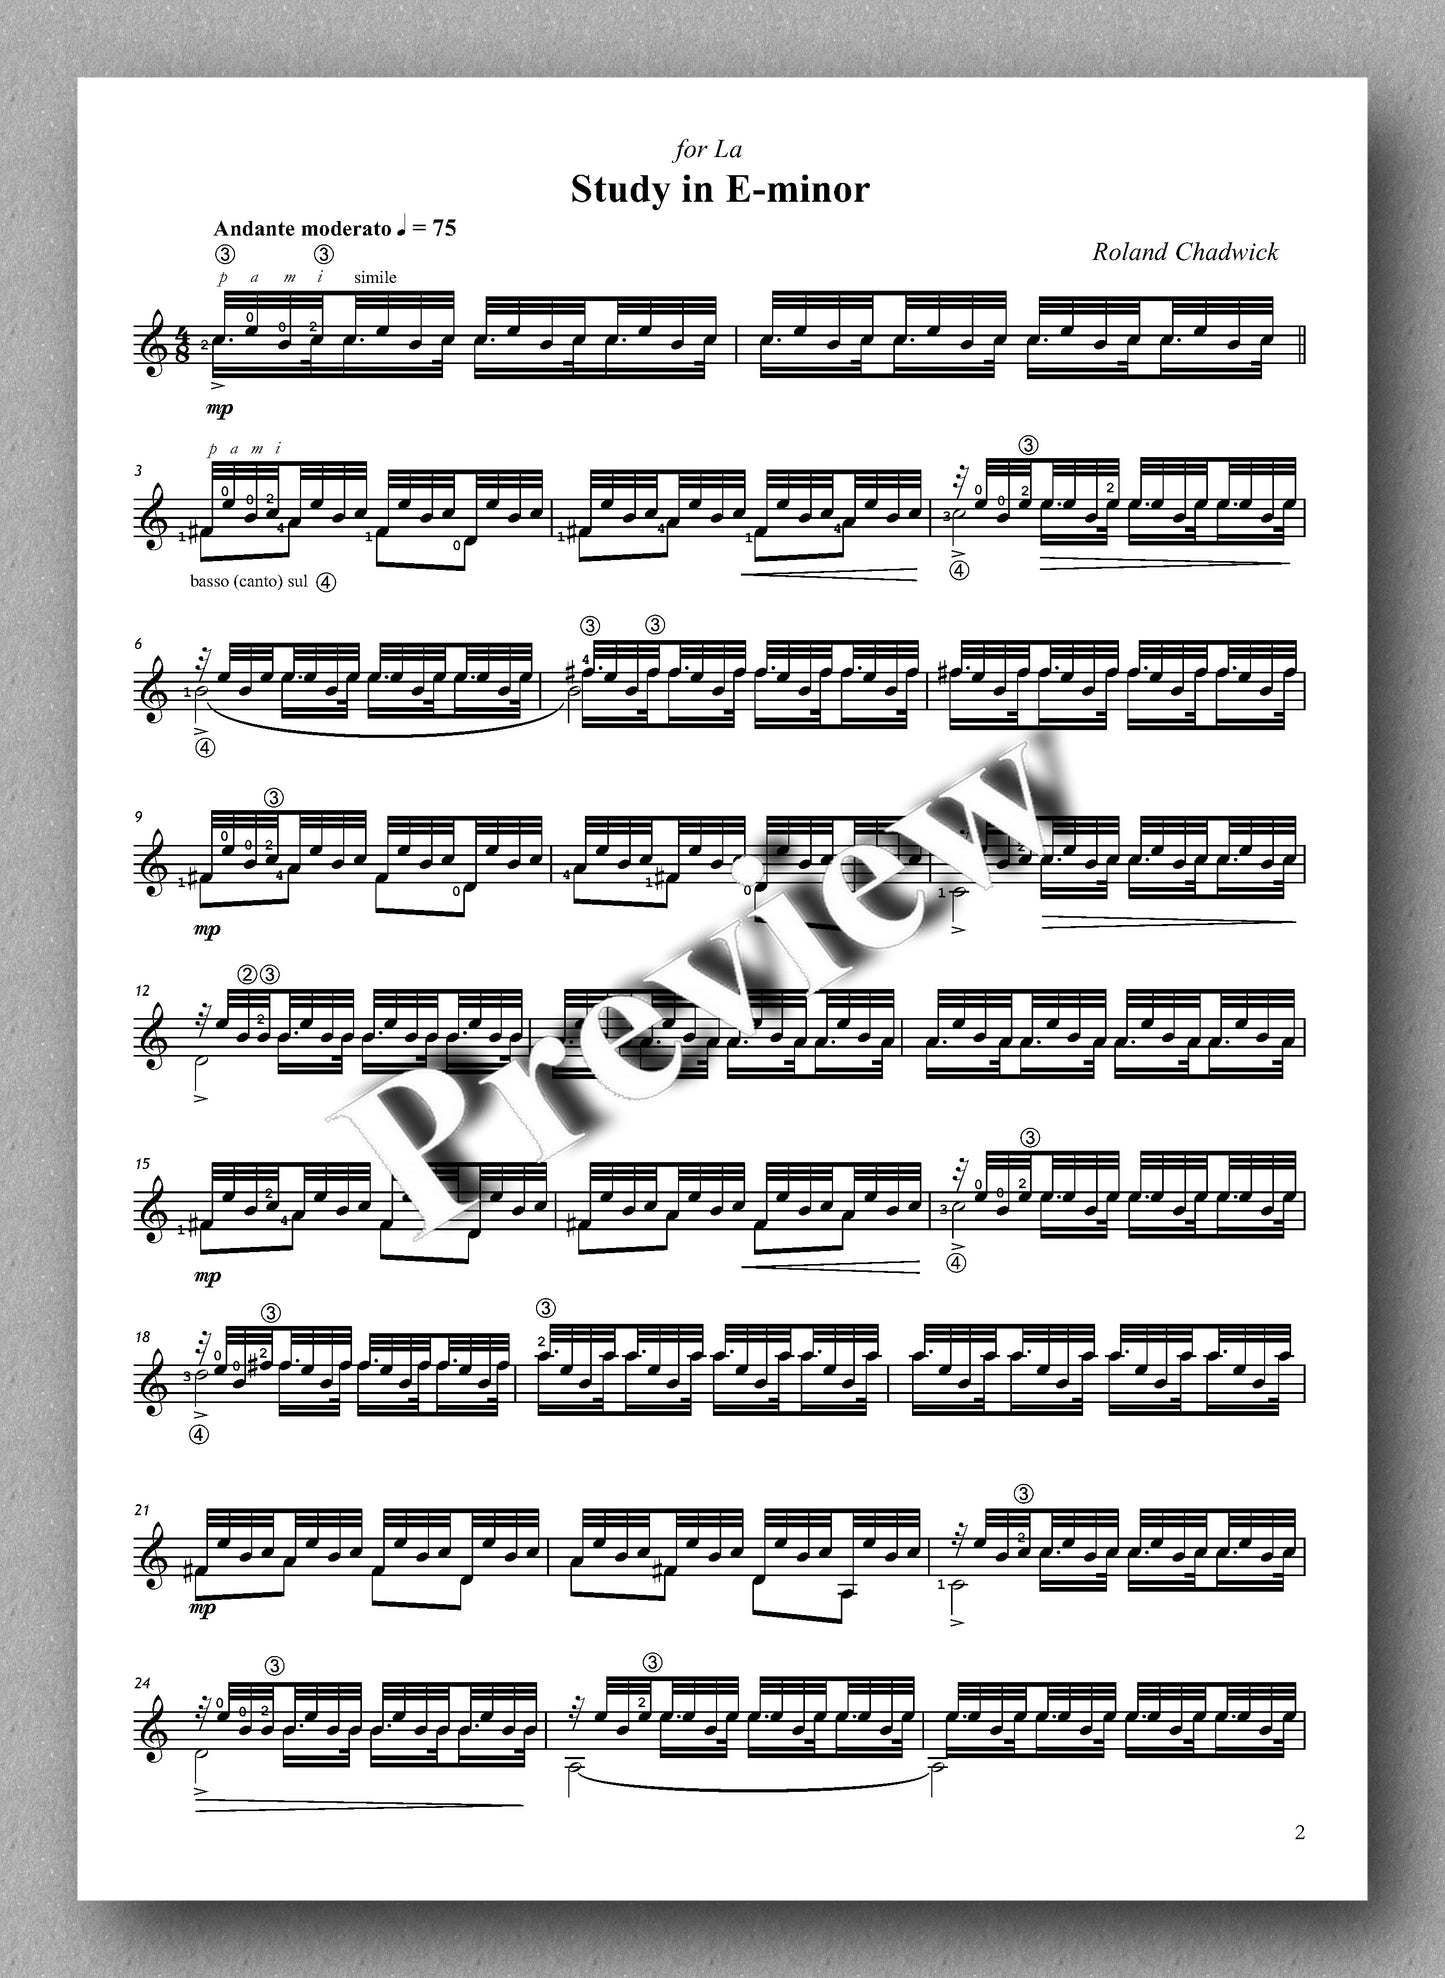 Roland Chadwick - Study in E-minor (Andante moderato) -preview of the music score.